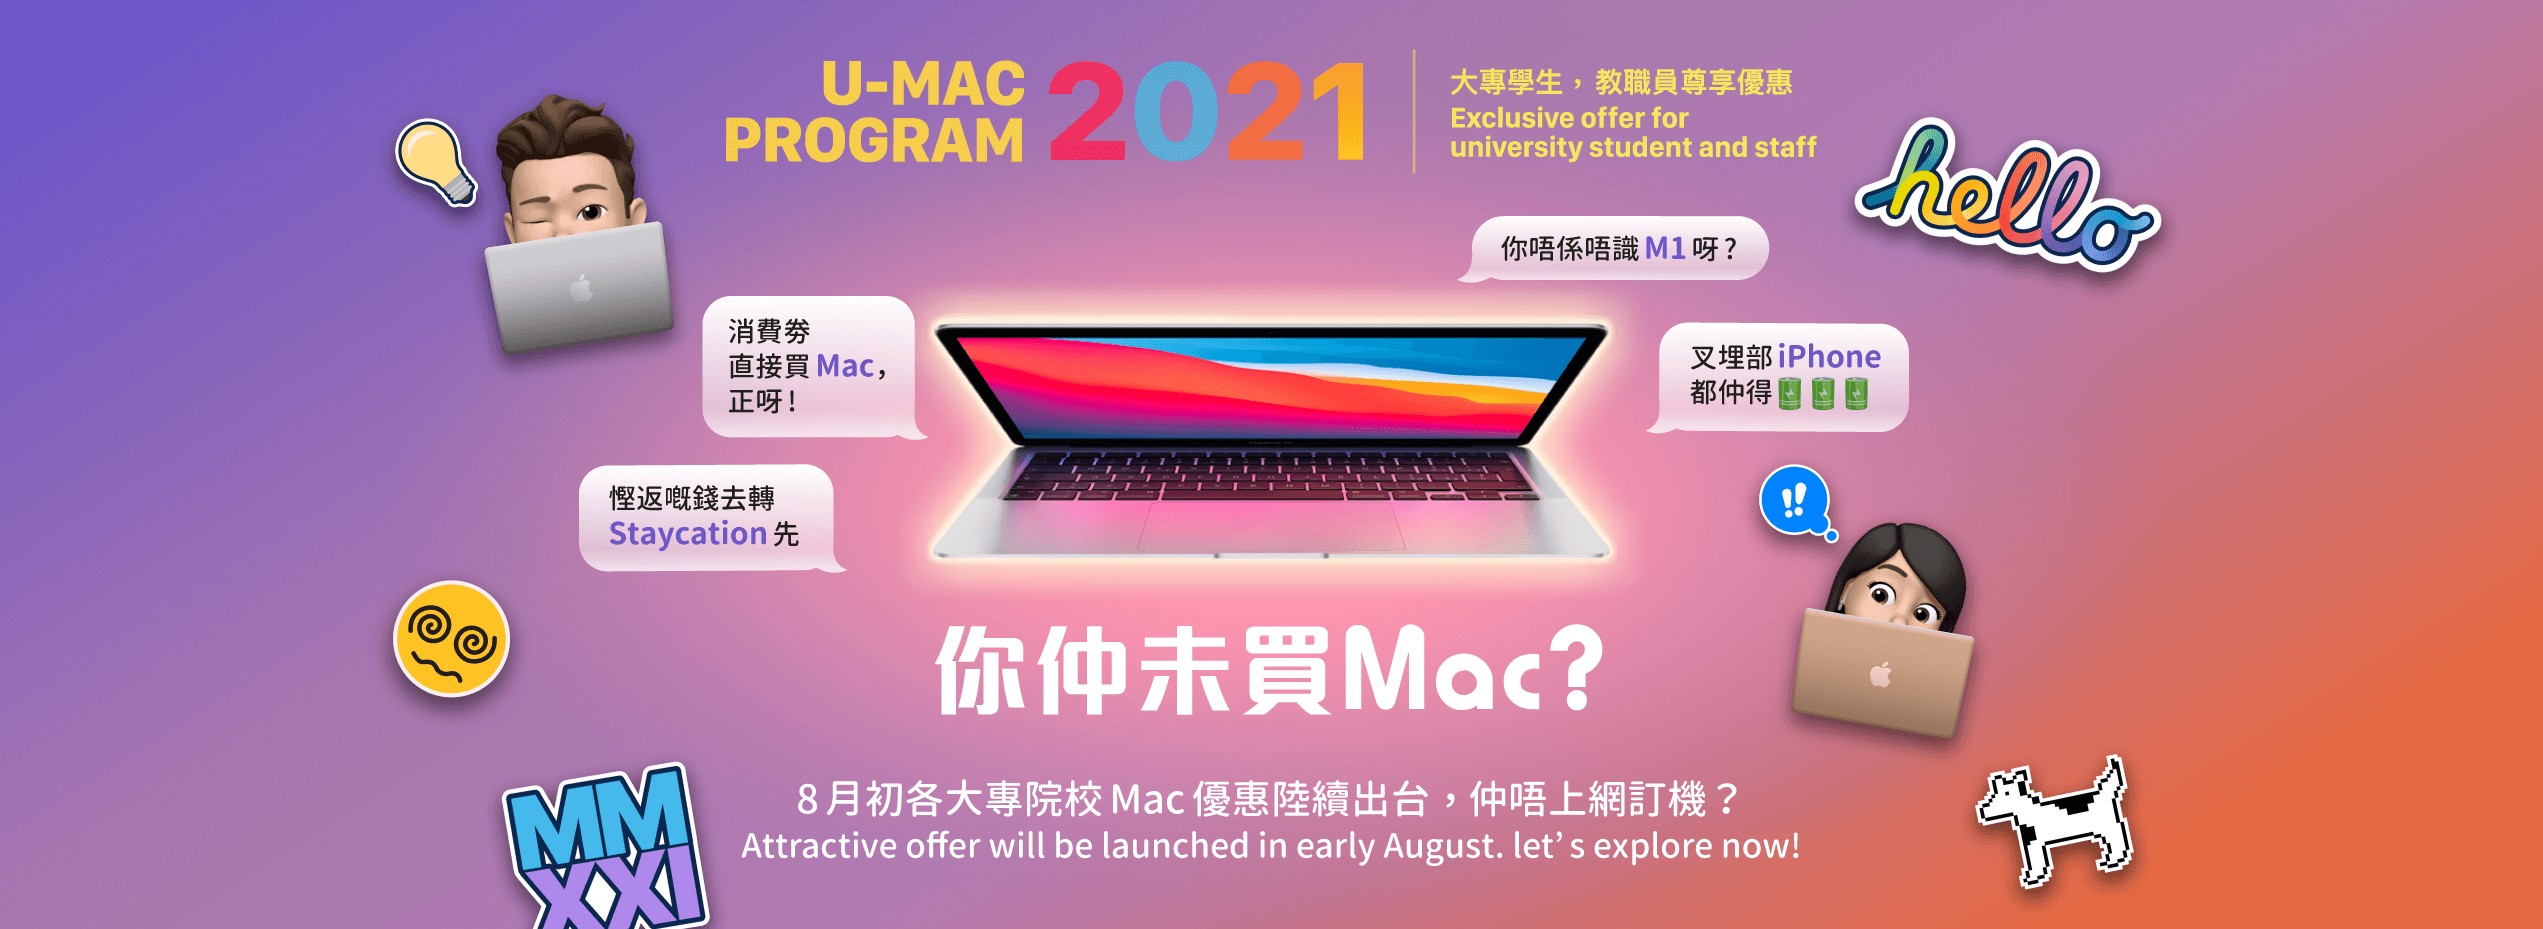 UMAC Program